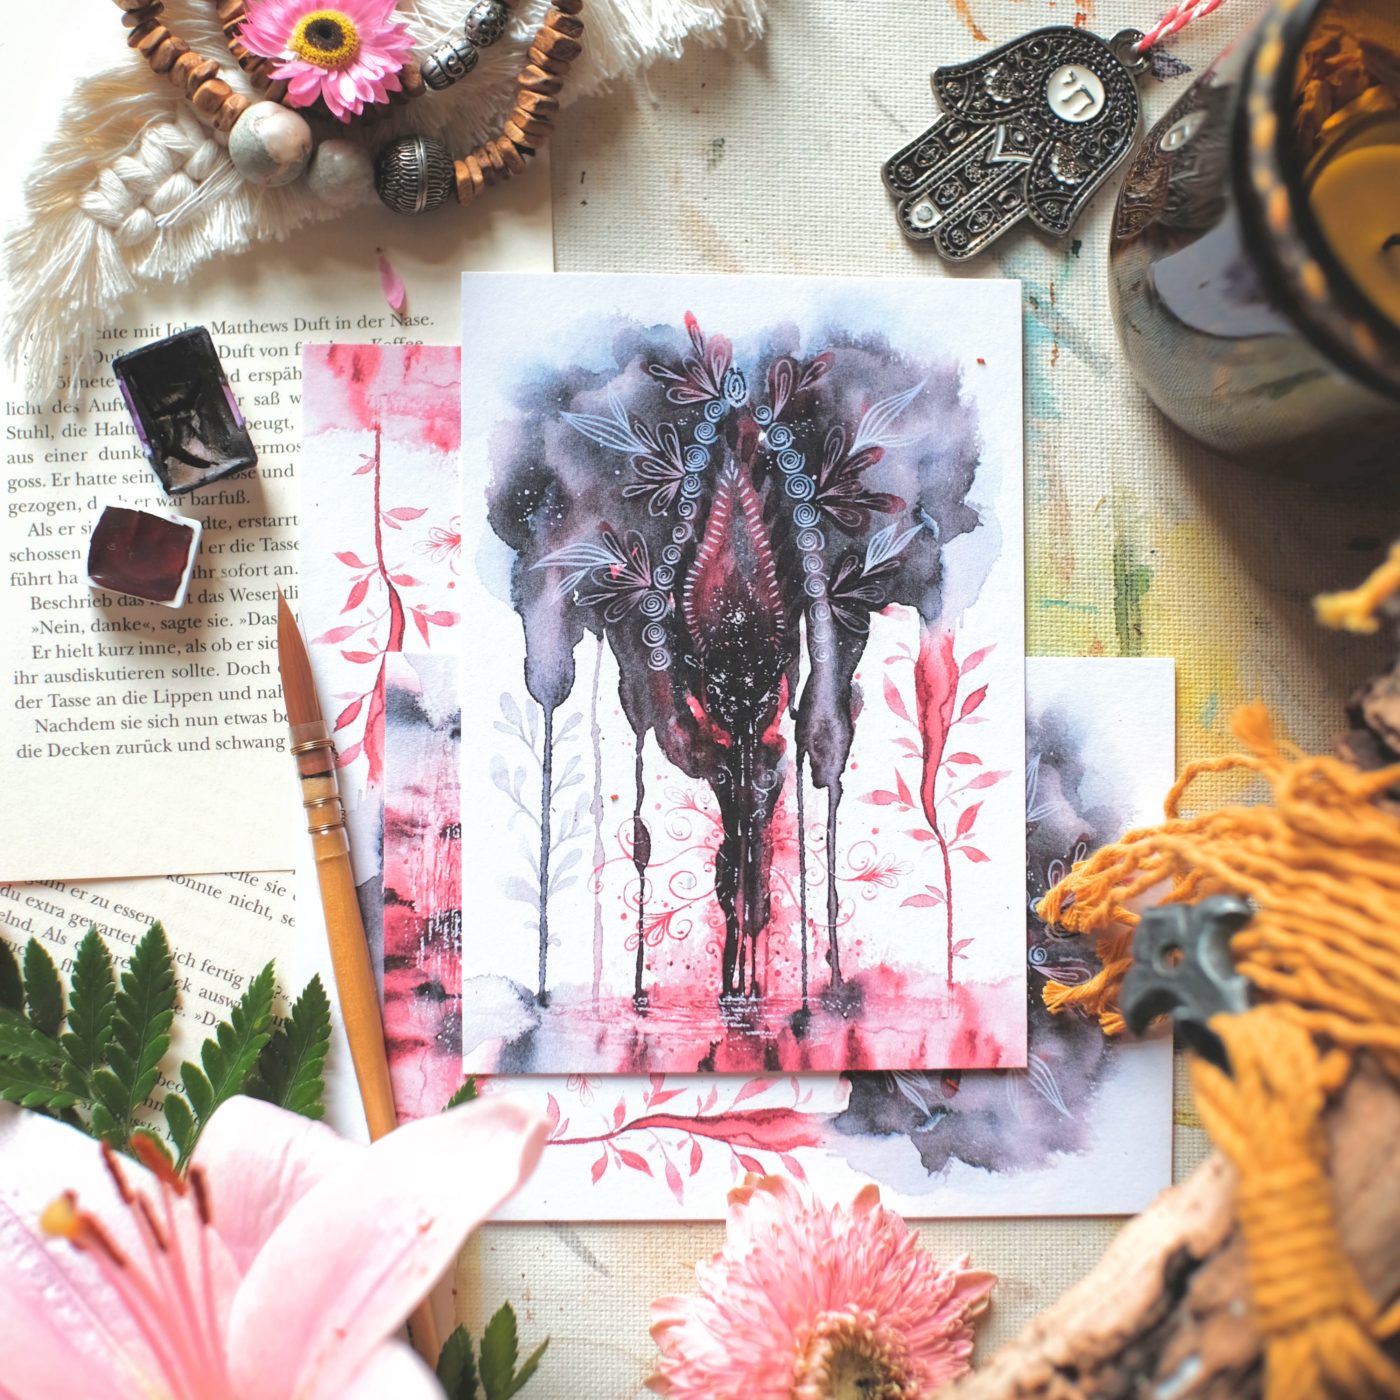 postkarte maria und der pinsel yoni im fluss vulva zyklus periode menstruation feminine kunst aquarell oeko artprint wicca schaman boho - Maria und der Pinsel